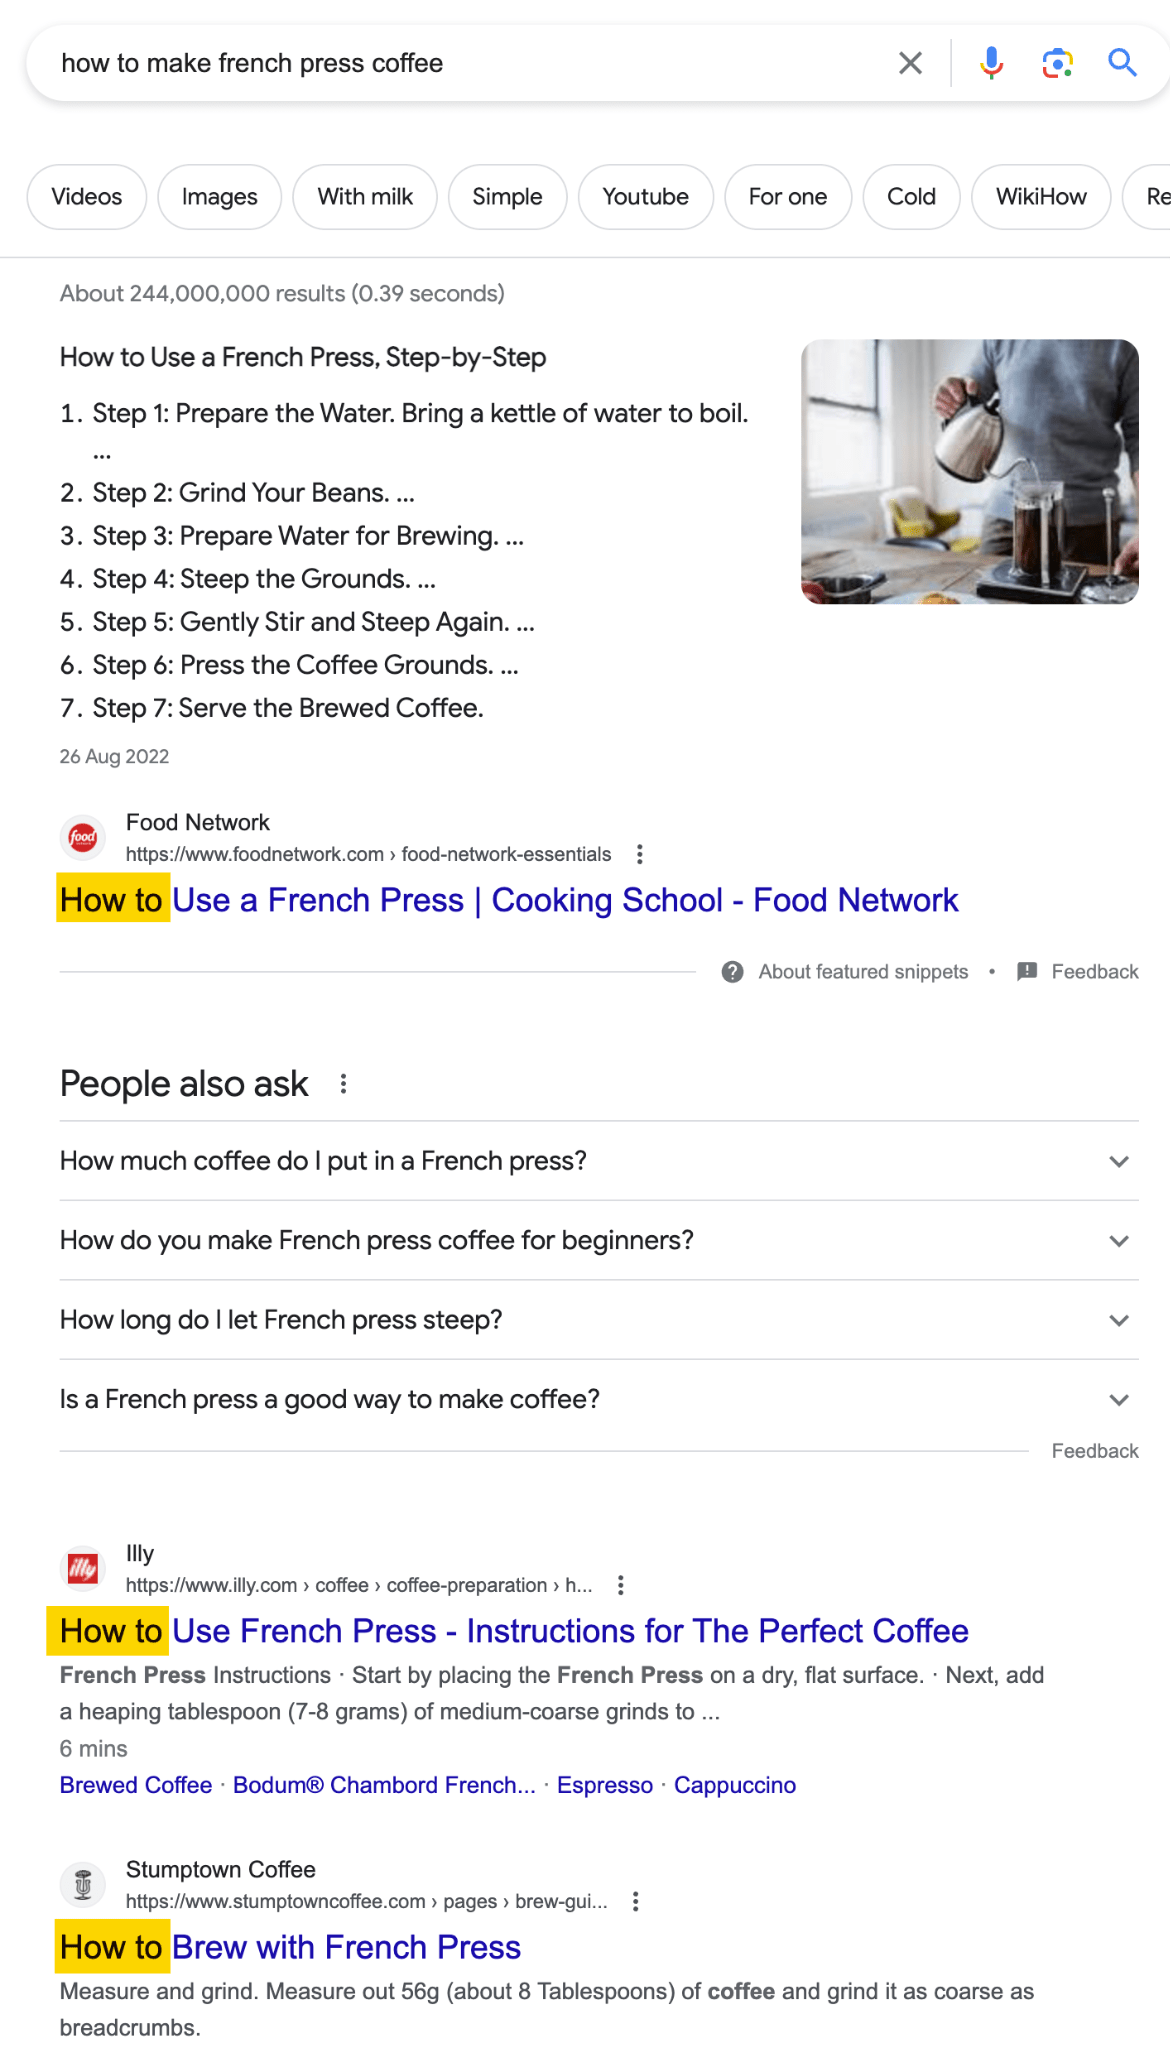 "Fransız basın kahvesi nasıl yapılır" ile ilgili Google arama sonuçları, arama yapanların bir nasıl yapılır kılavuzu istediğini gösteriyor